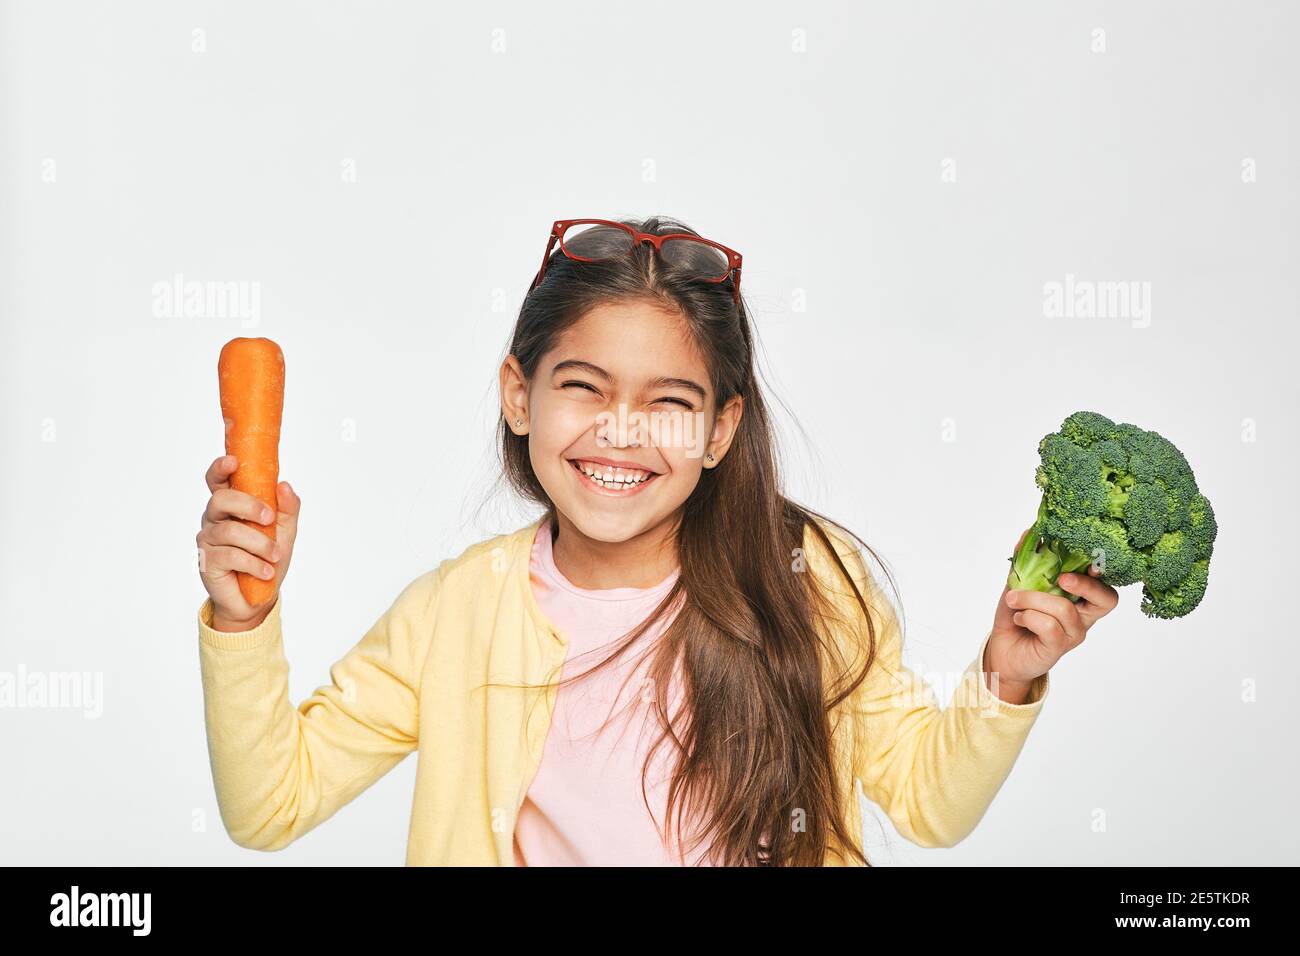 La femme asiatique est très heureuse de manger des légumes sains. Les carottes et le brocoli sont excellents pour la santé des enfants Banque D'Images